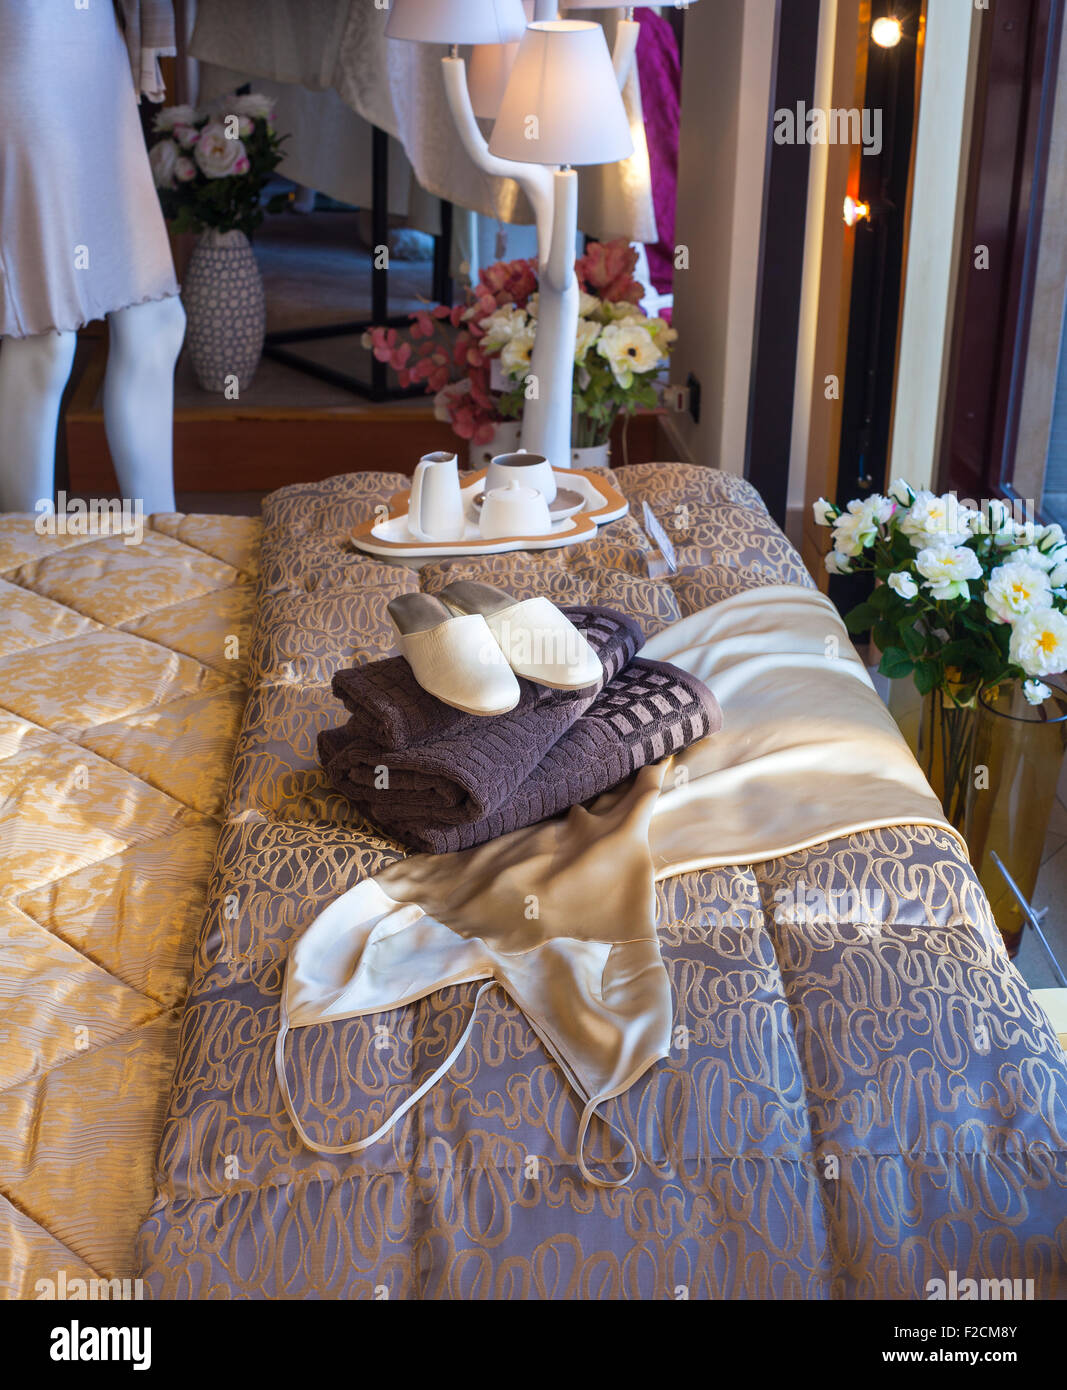 Hembra blanca zapatillas sobre las toallas en la cama Foto de stock